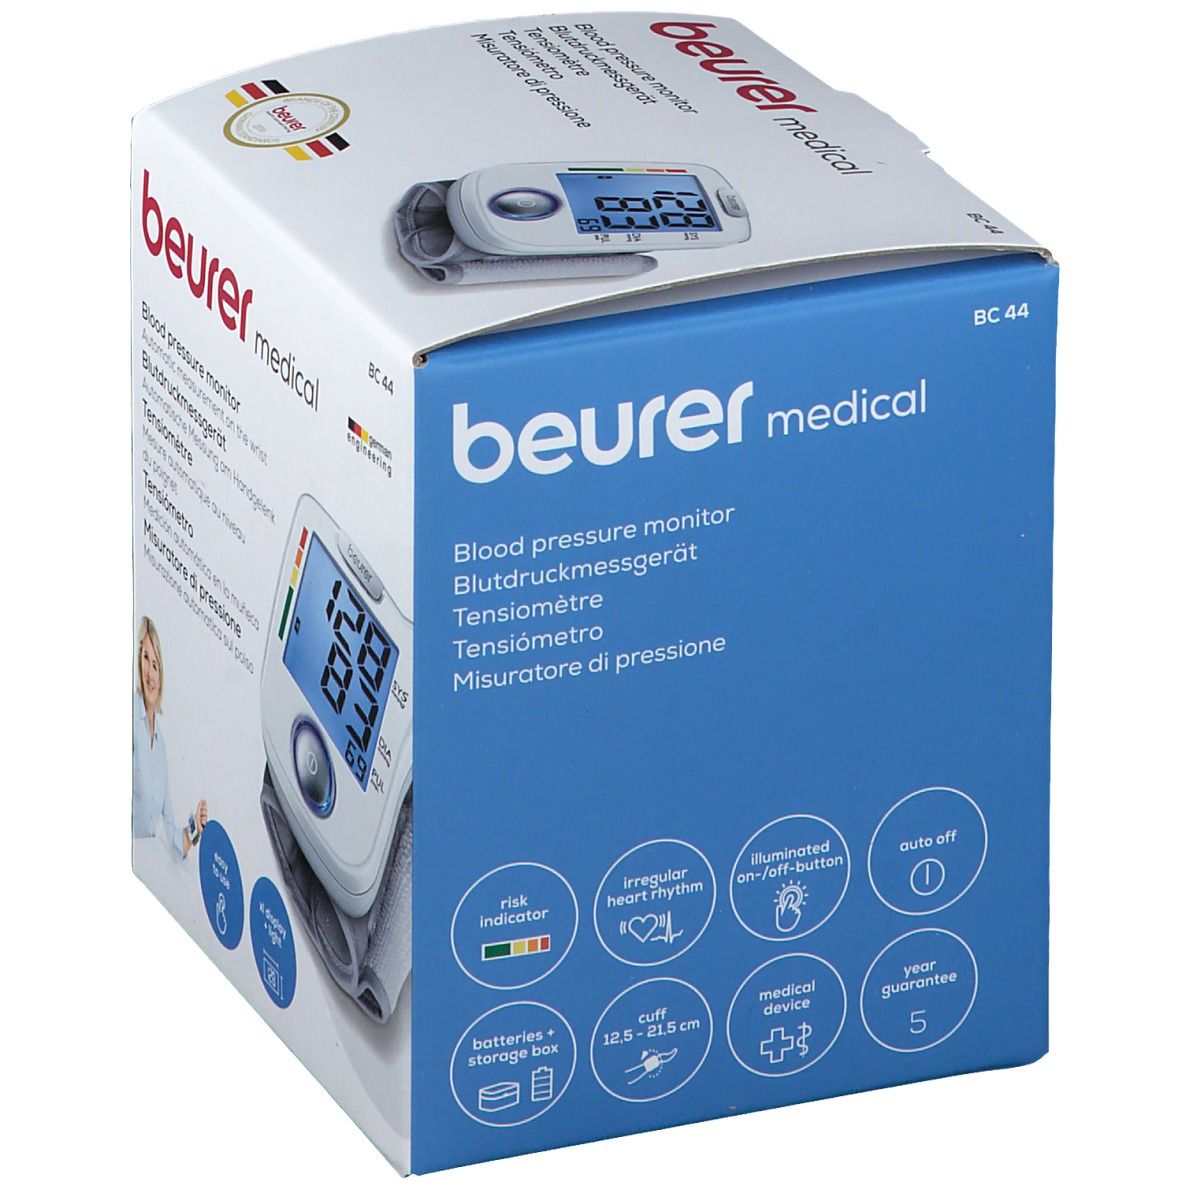 beurer Handgelenk-Blutdruckmessgerät BC44